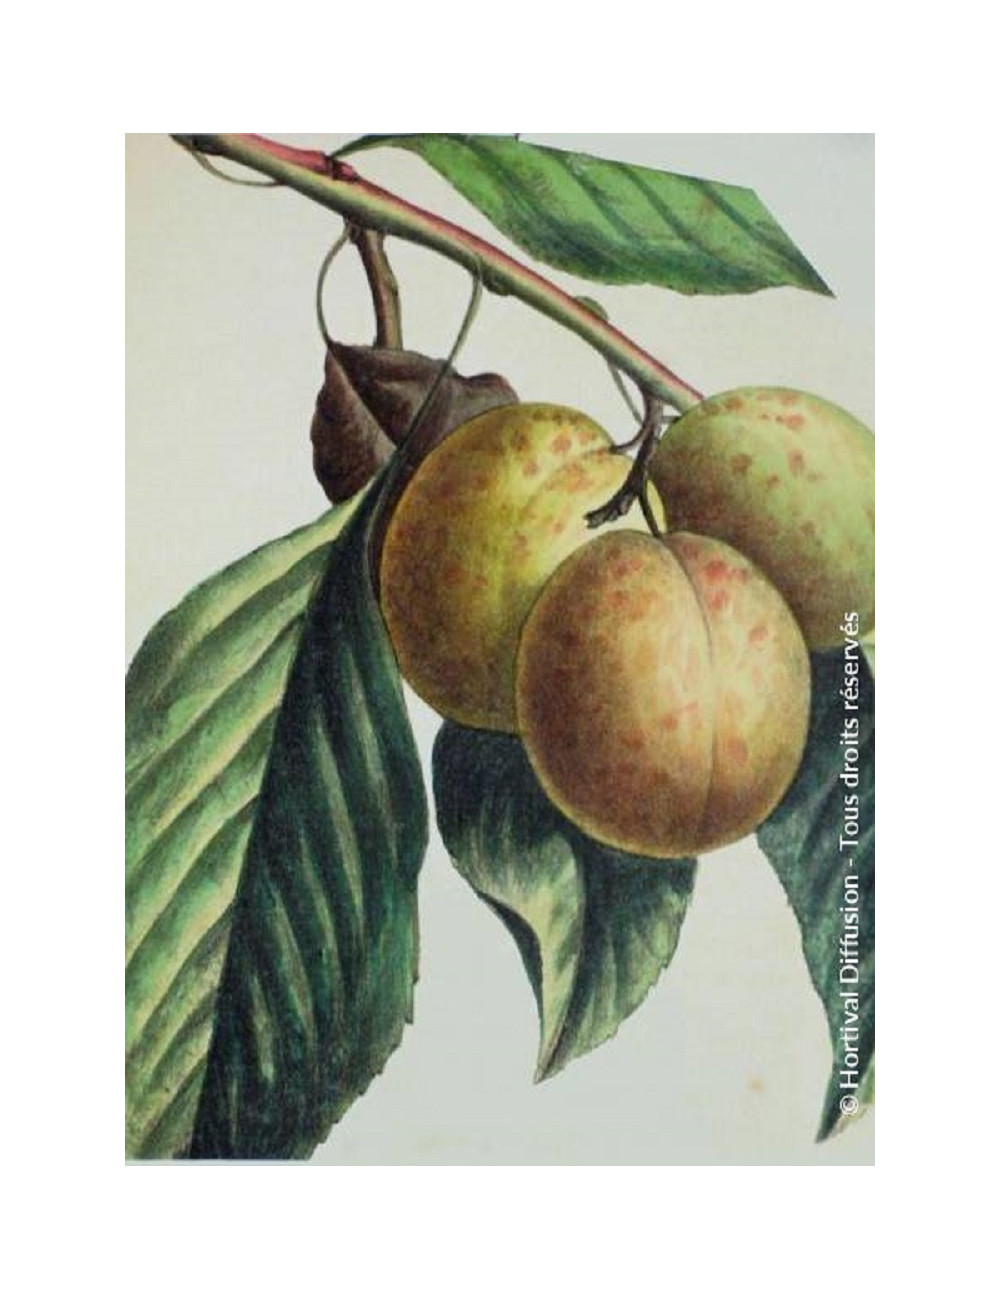 PRUNIER REINE CLAUDE DE BAVAY (Prunus domestica)